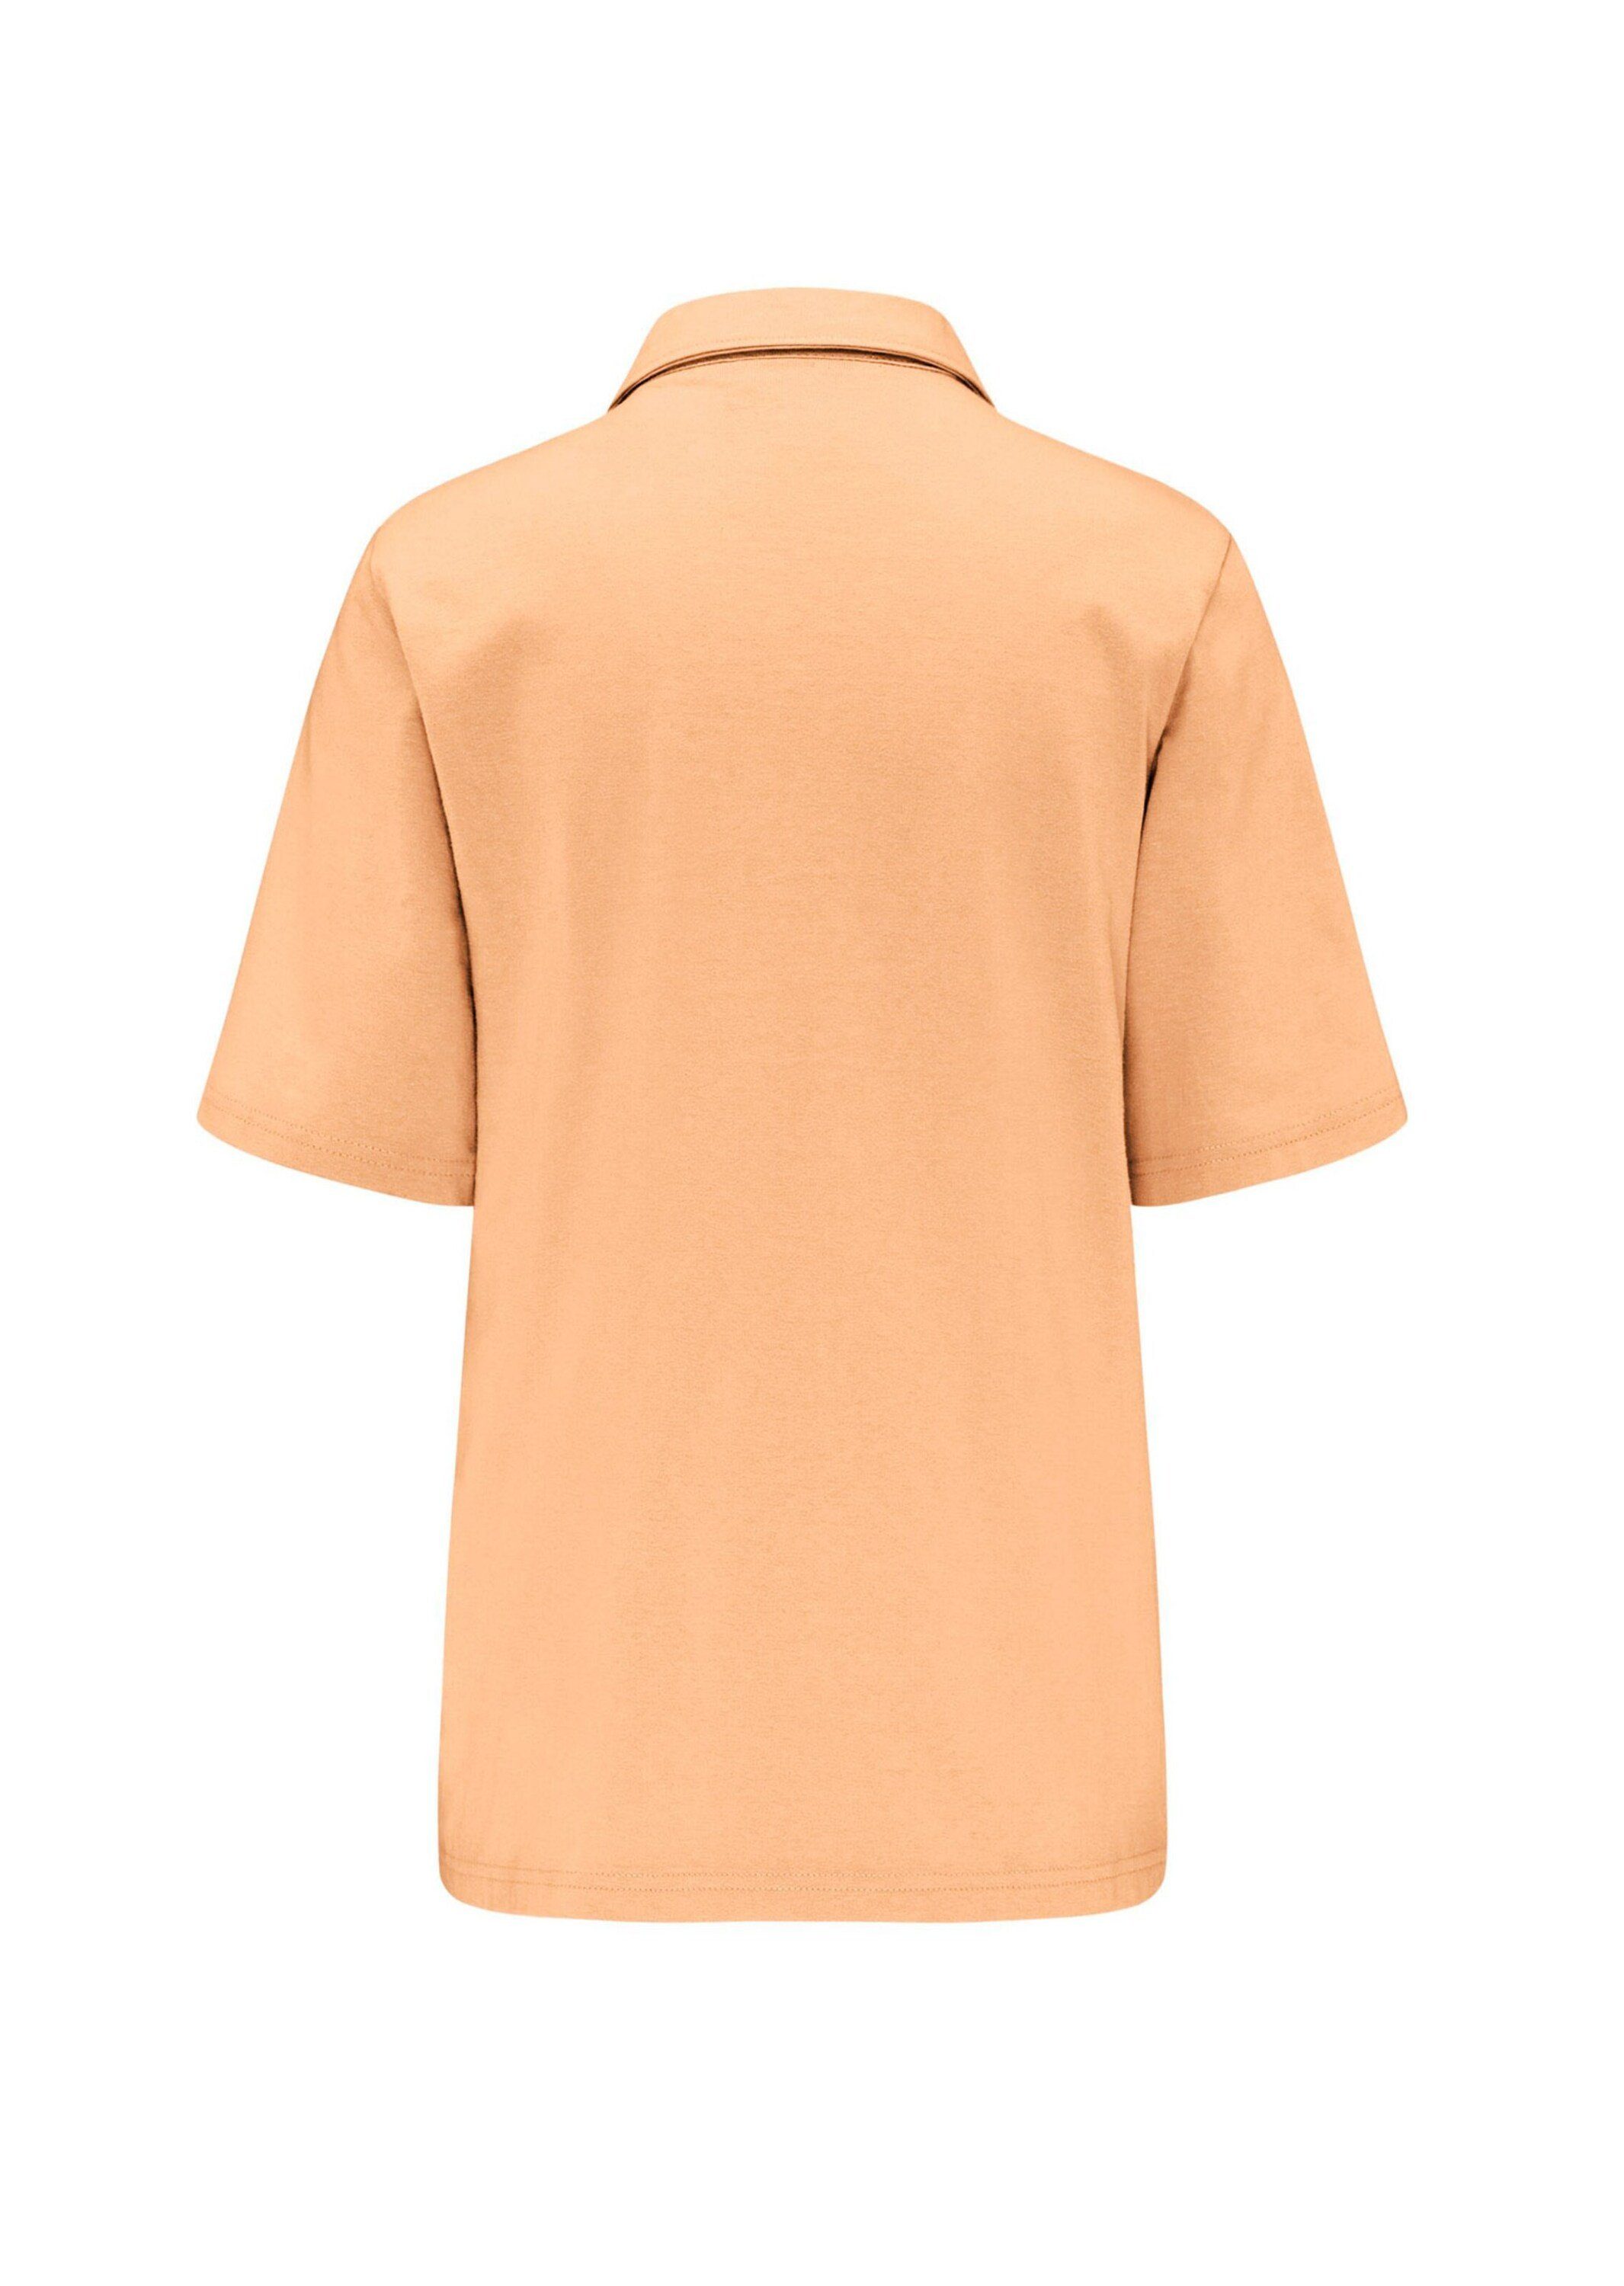 GOLDNER Poloshirt Kurzgröße: Stretchbequemes Poloshirt melba